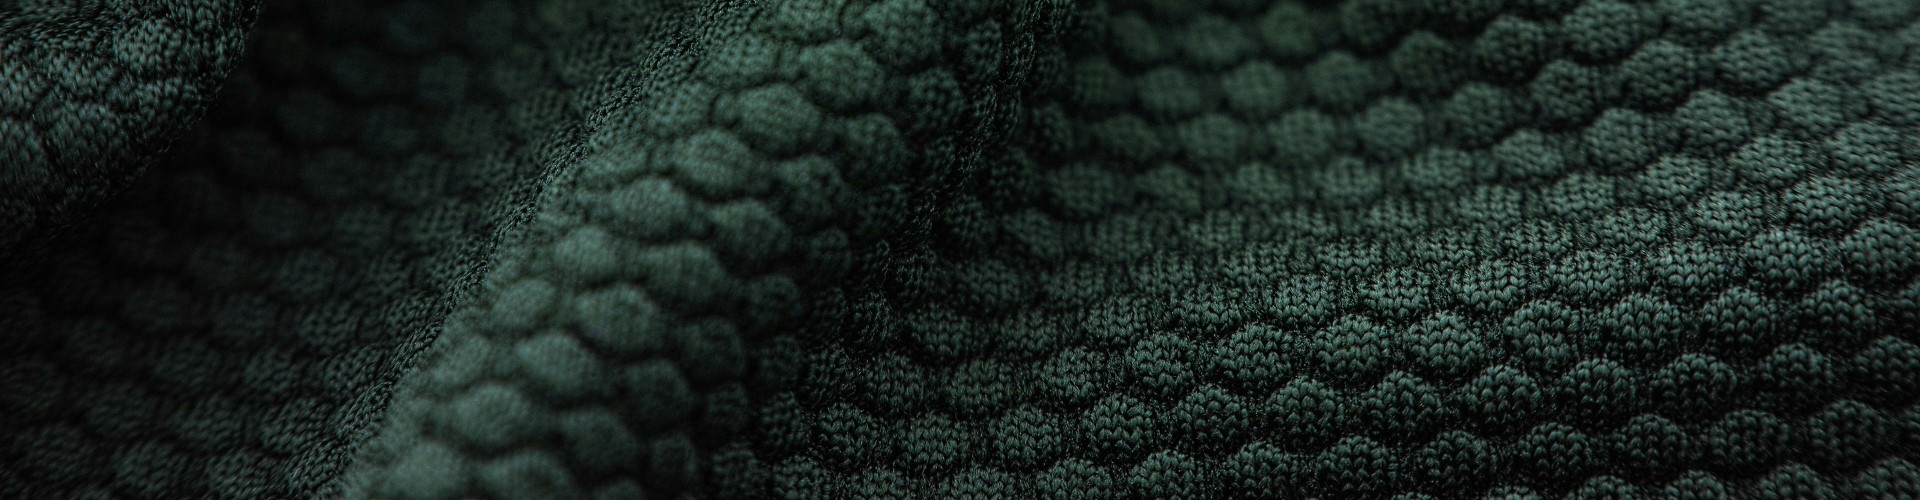 Achtergrond Styled by Debby groene stof met ingebreid patroon